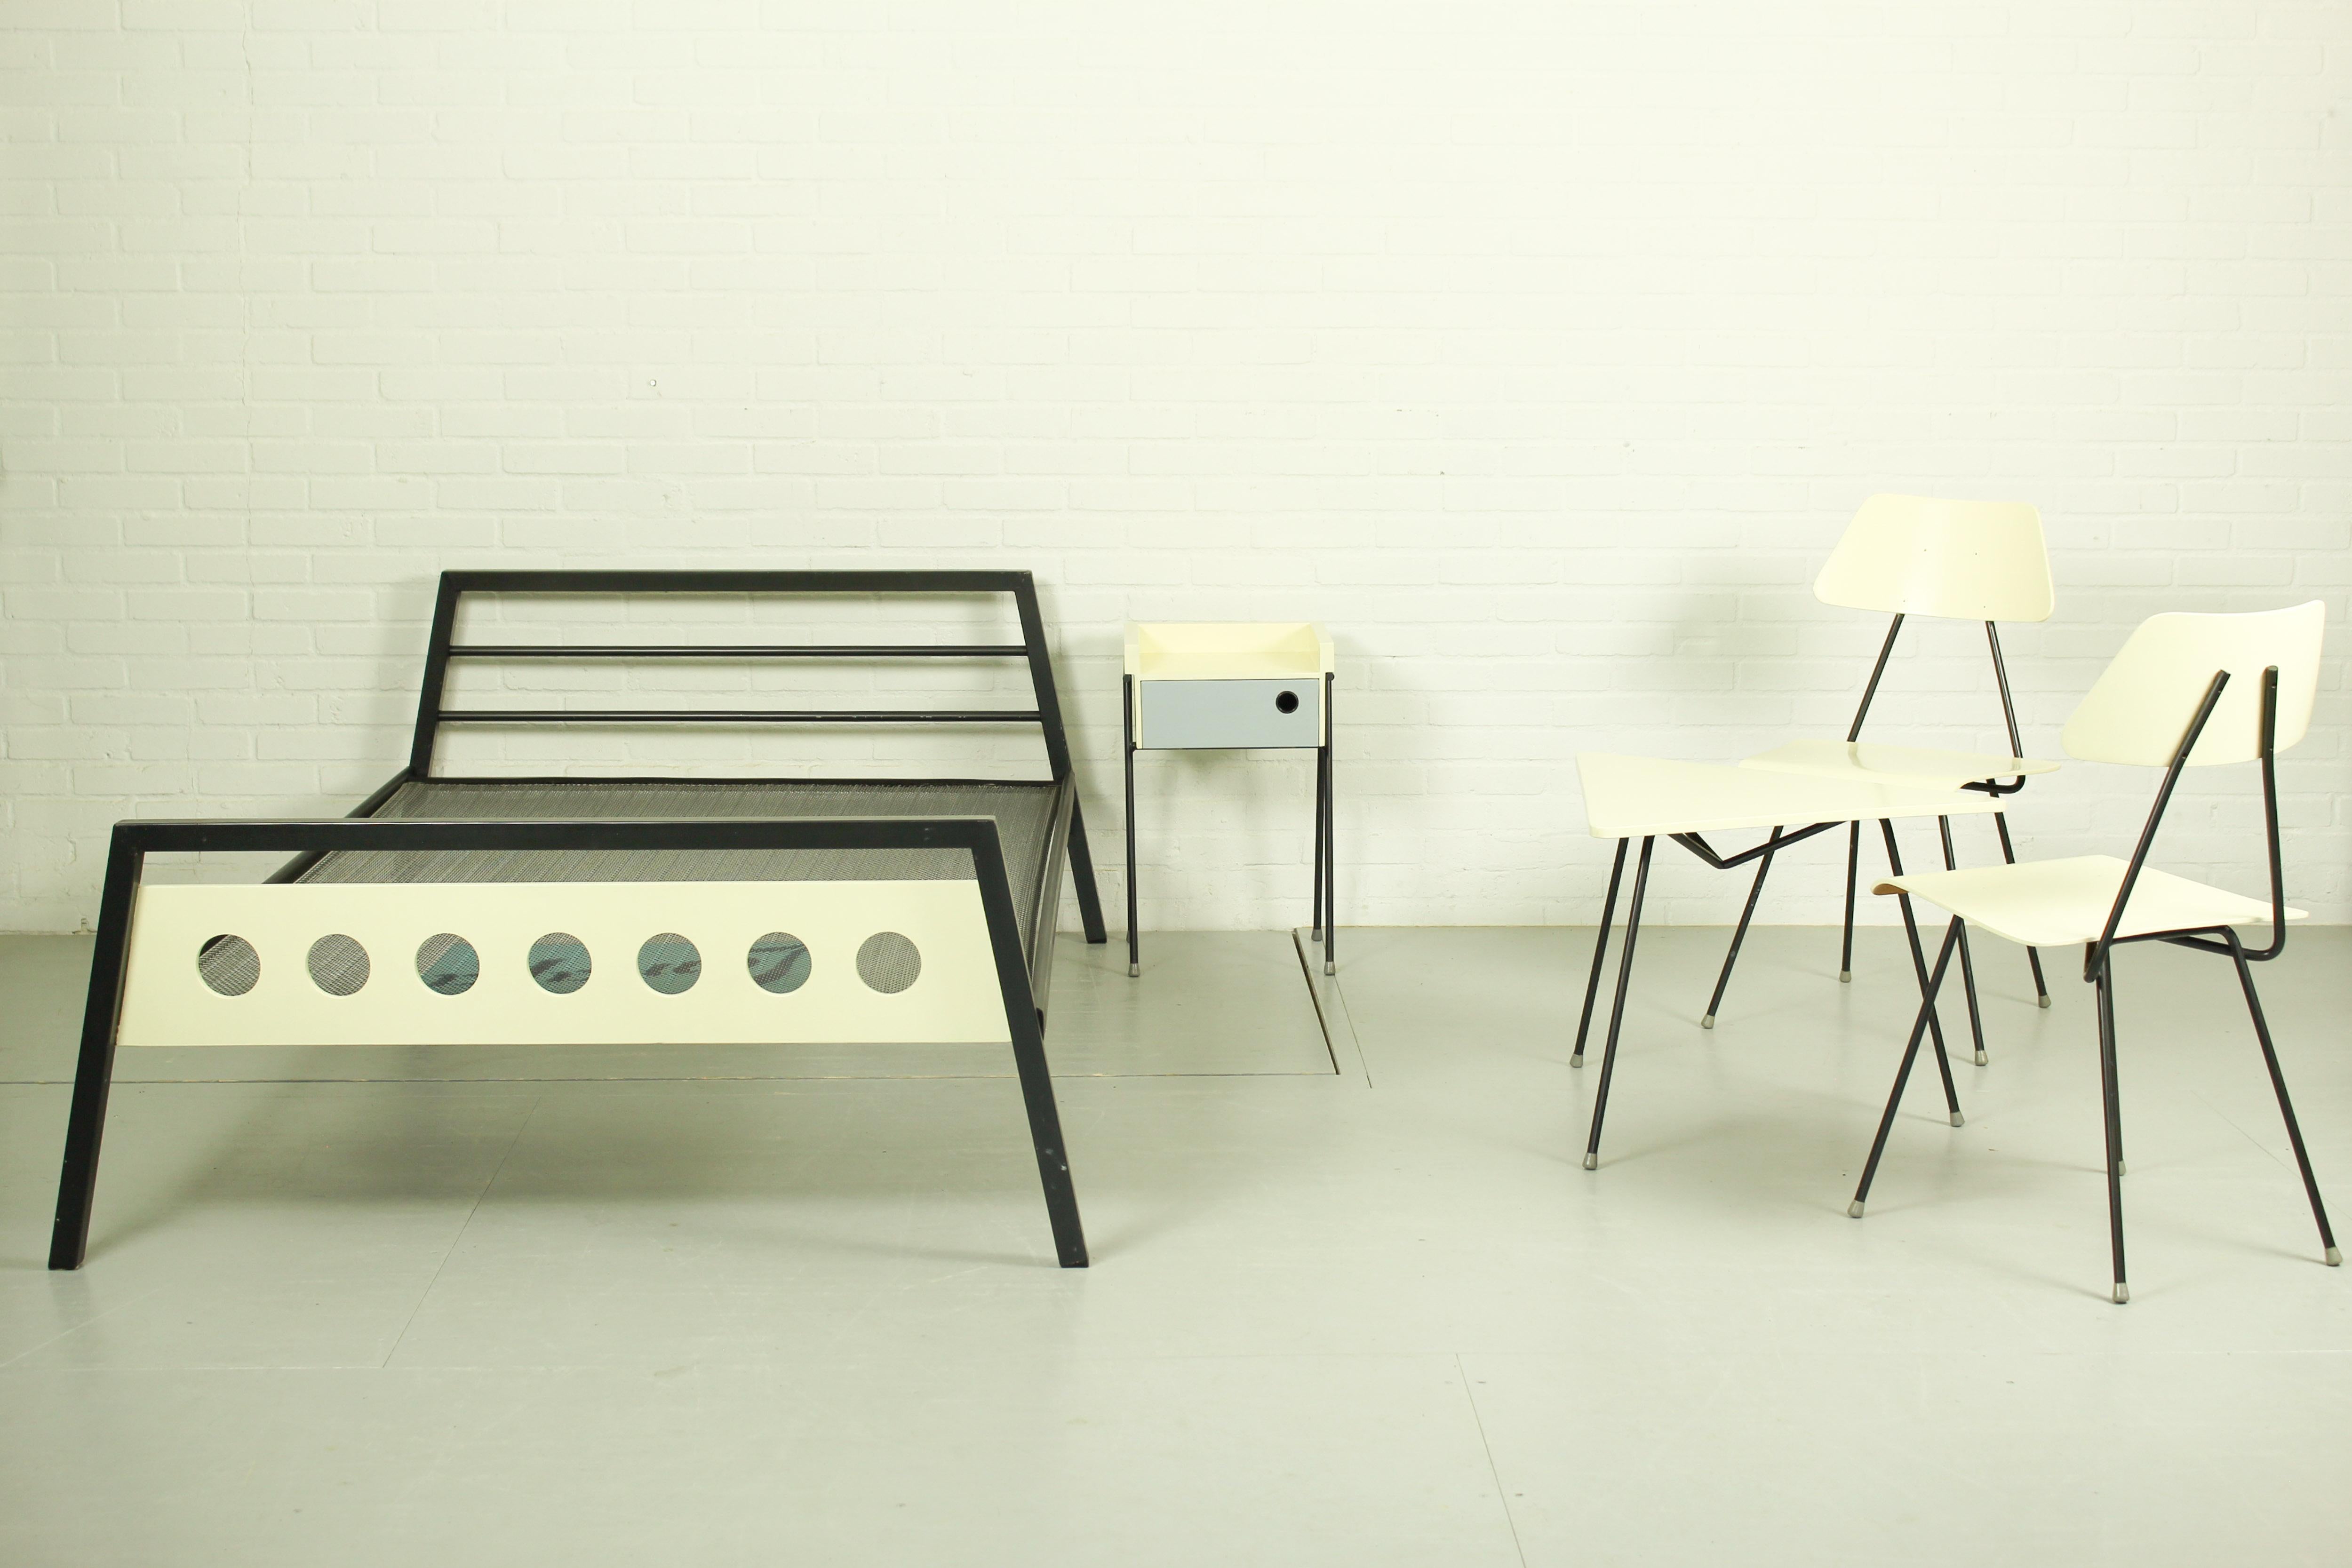 Dieses sehr seltene Set aus Bett, Nachttisch und Tisch mit Stühlen wurde in den 1950er Jahren für den ehemaligen und renommierten niederländischen Bettenhersteller DICO hergestellt. Sie wurden von Rob Parry und Emile Truijen im Rahmen der Serie